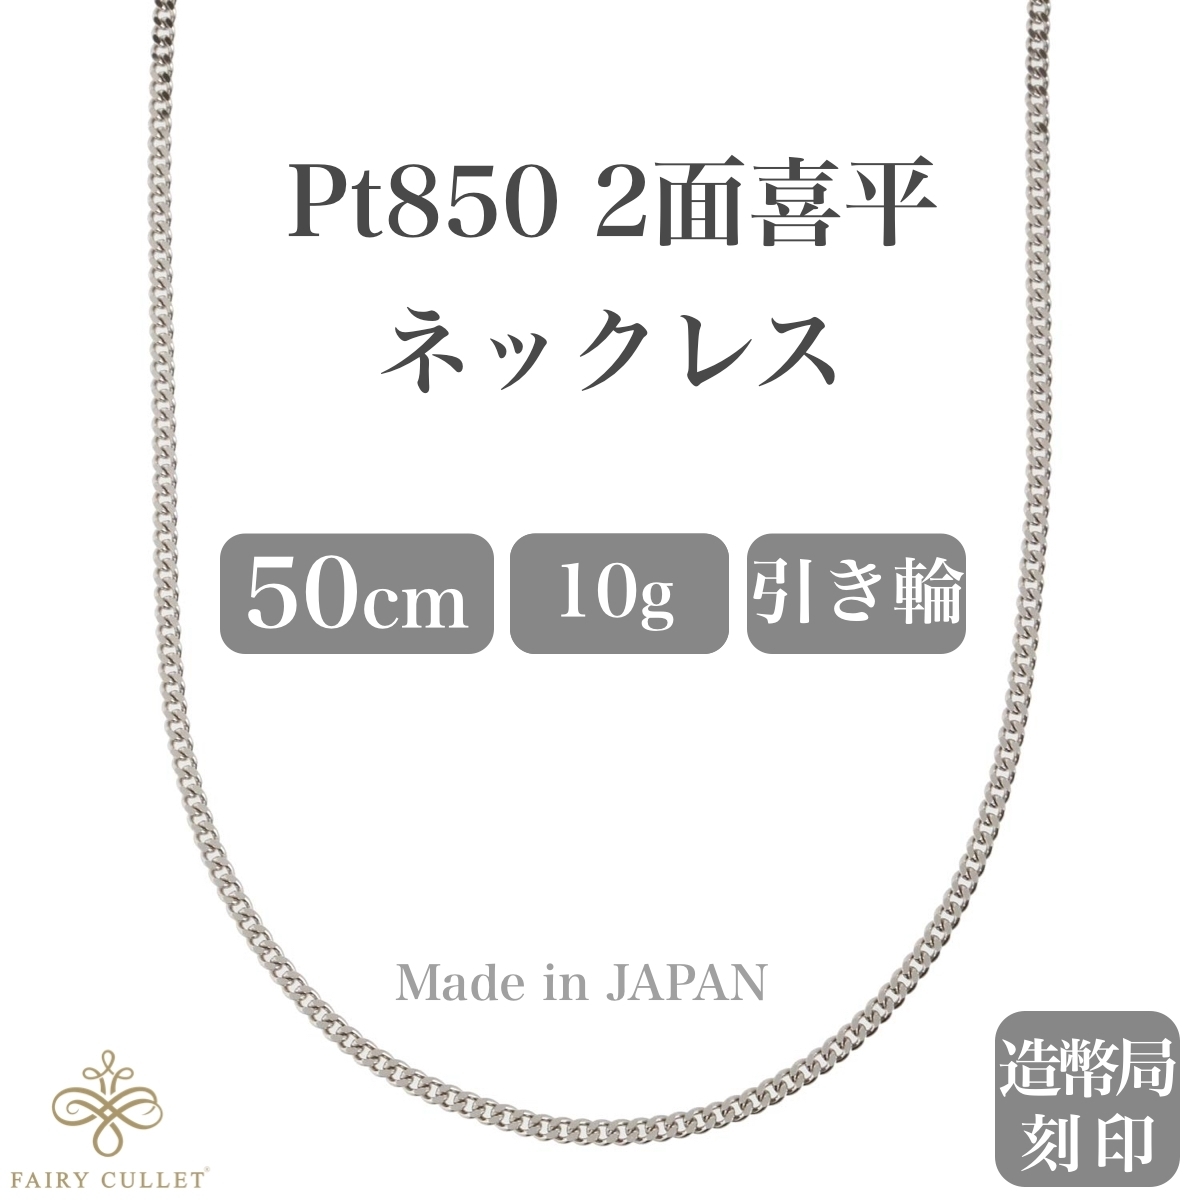 プラチナネックレス Pt850 2面喜平チェーン 日本製 検定印 10g 50cm